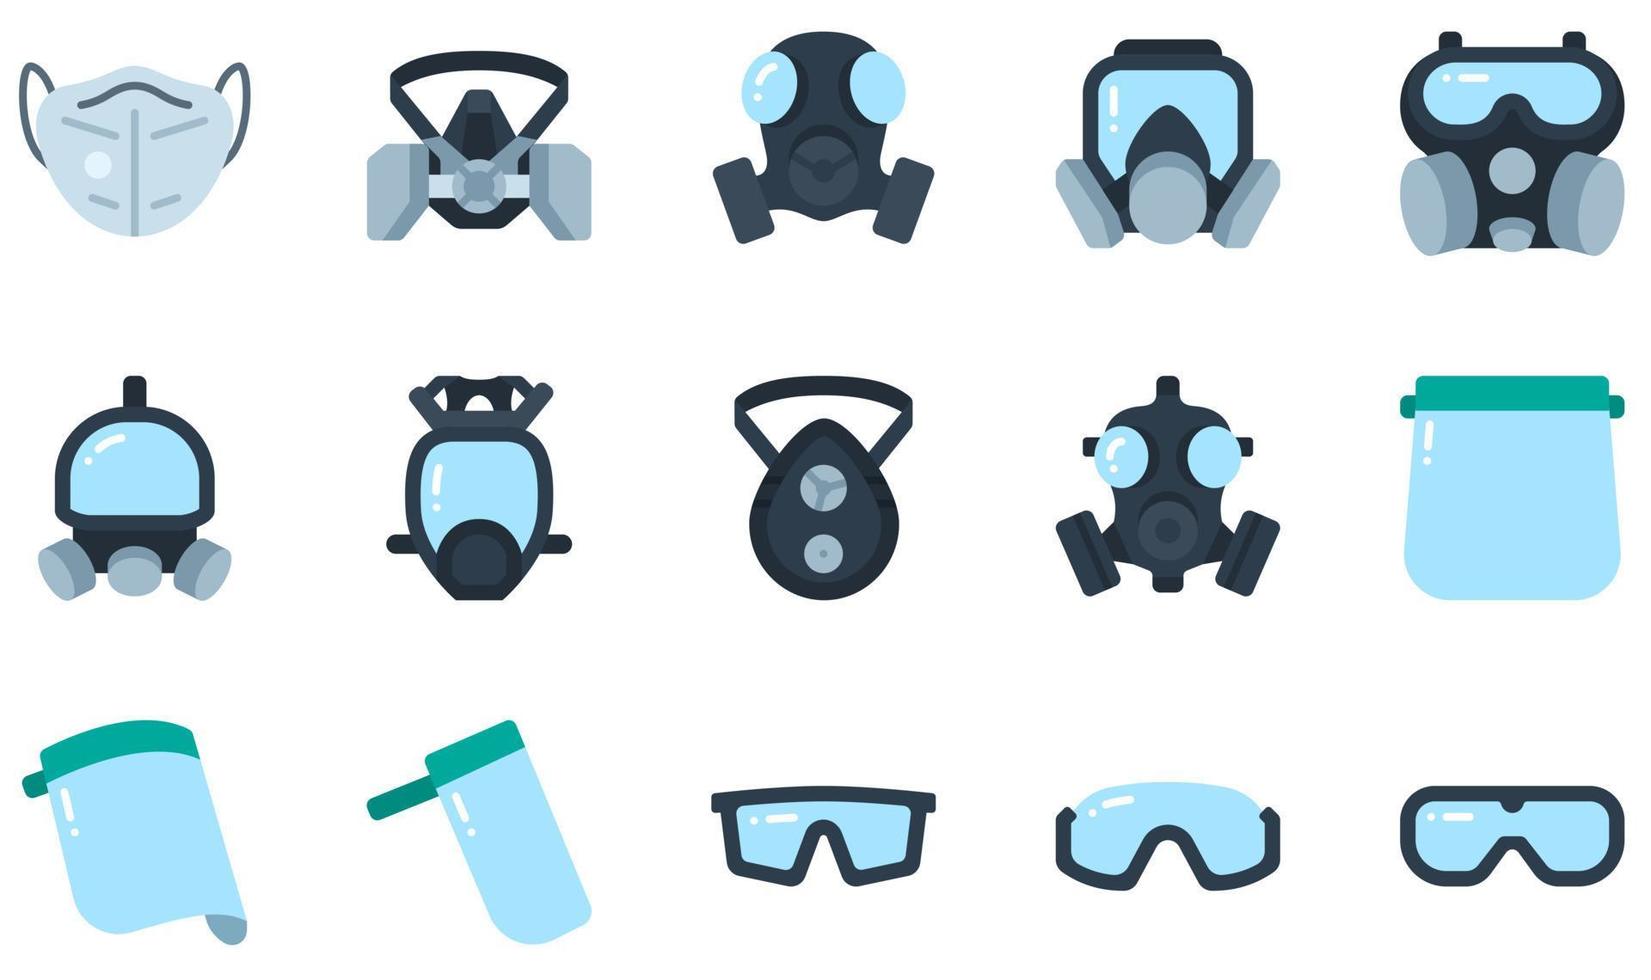 set di icone vettoriali relative alla maschera protettiva. contiene icone come maschera respiratoria, maschera antigas, visiera, 4 occhiali di sicurezza, maschera e altro ancora.